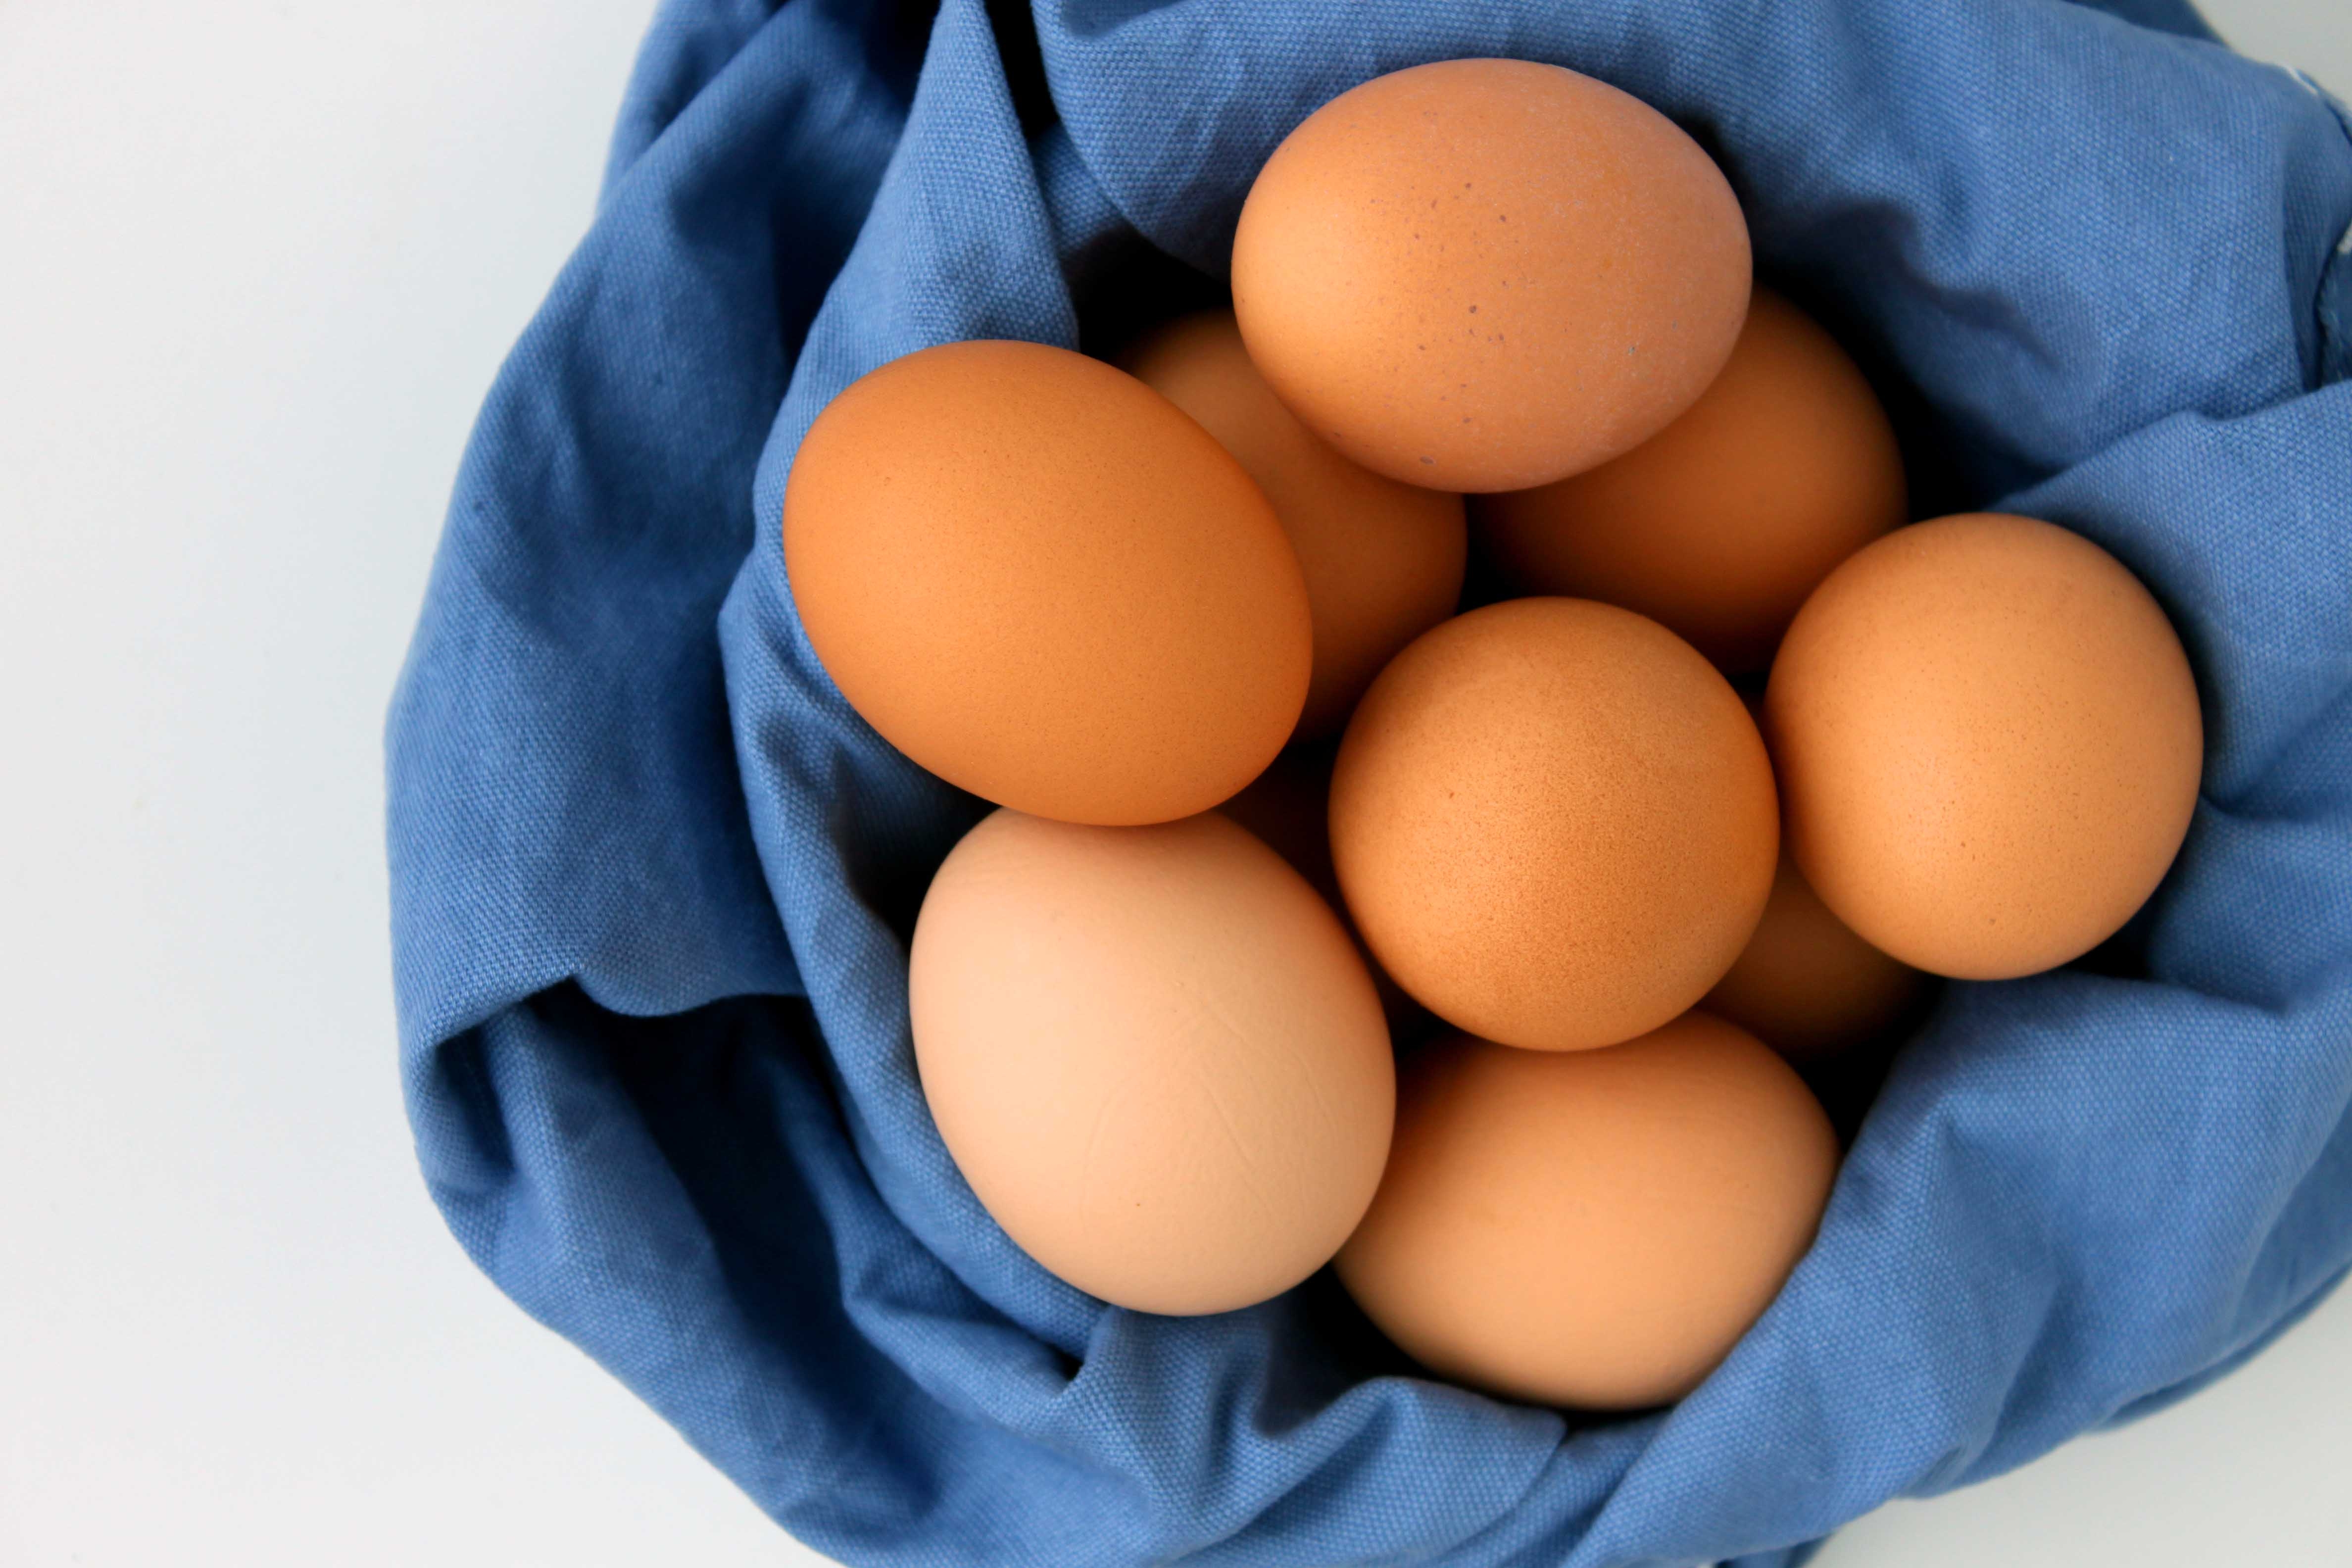 Nhận biết thực phẩm an toàn là trứng gà giúp người tiêu dùng tránh mua phải trứng giả, kém chất lượng